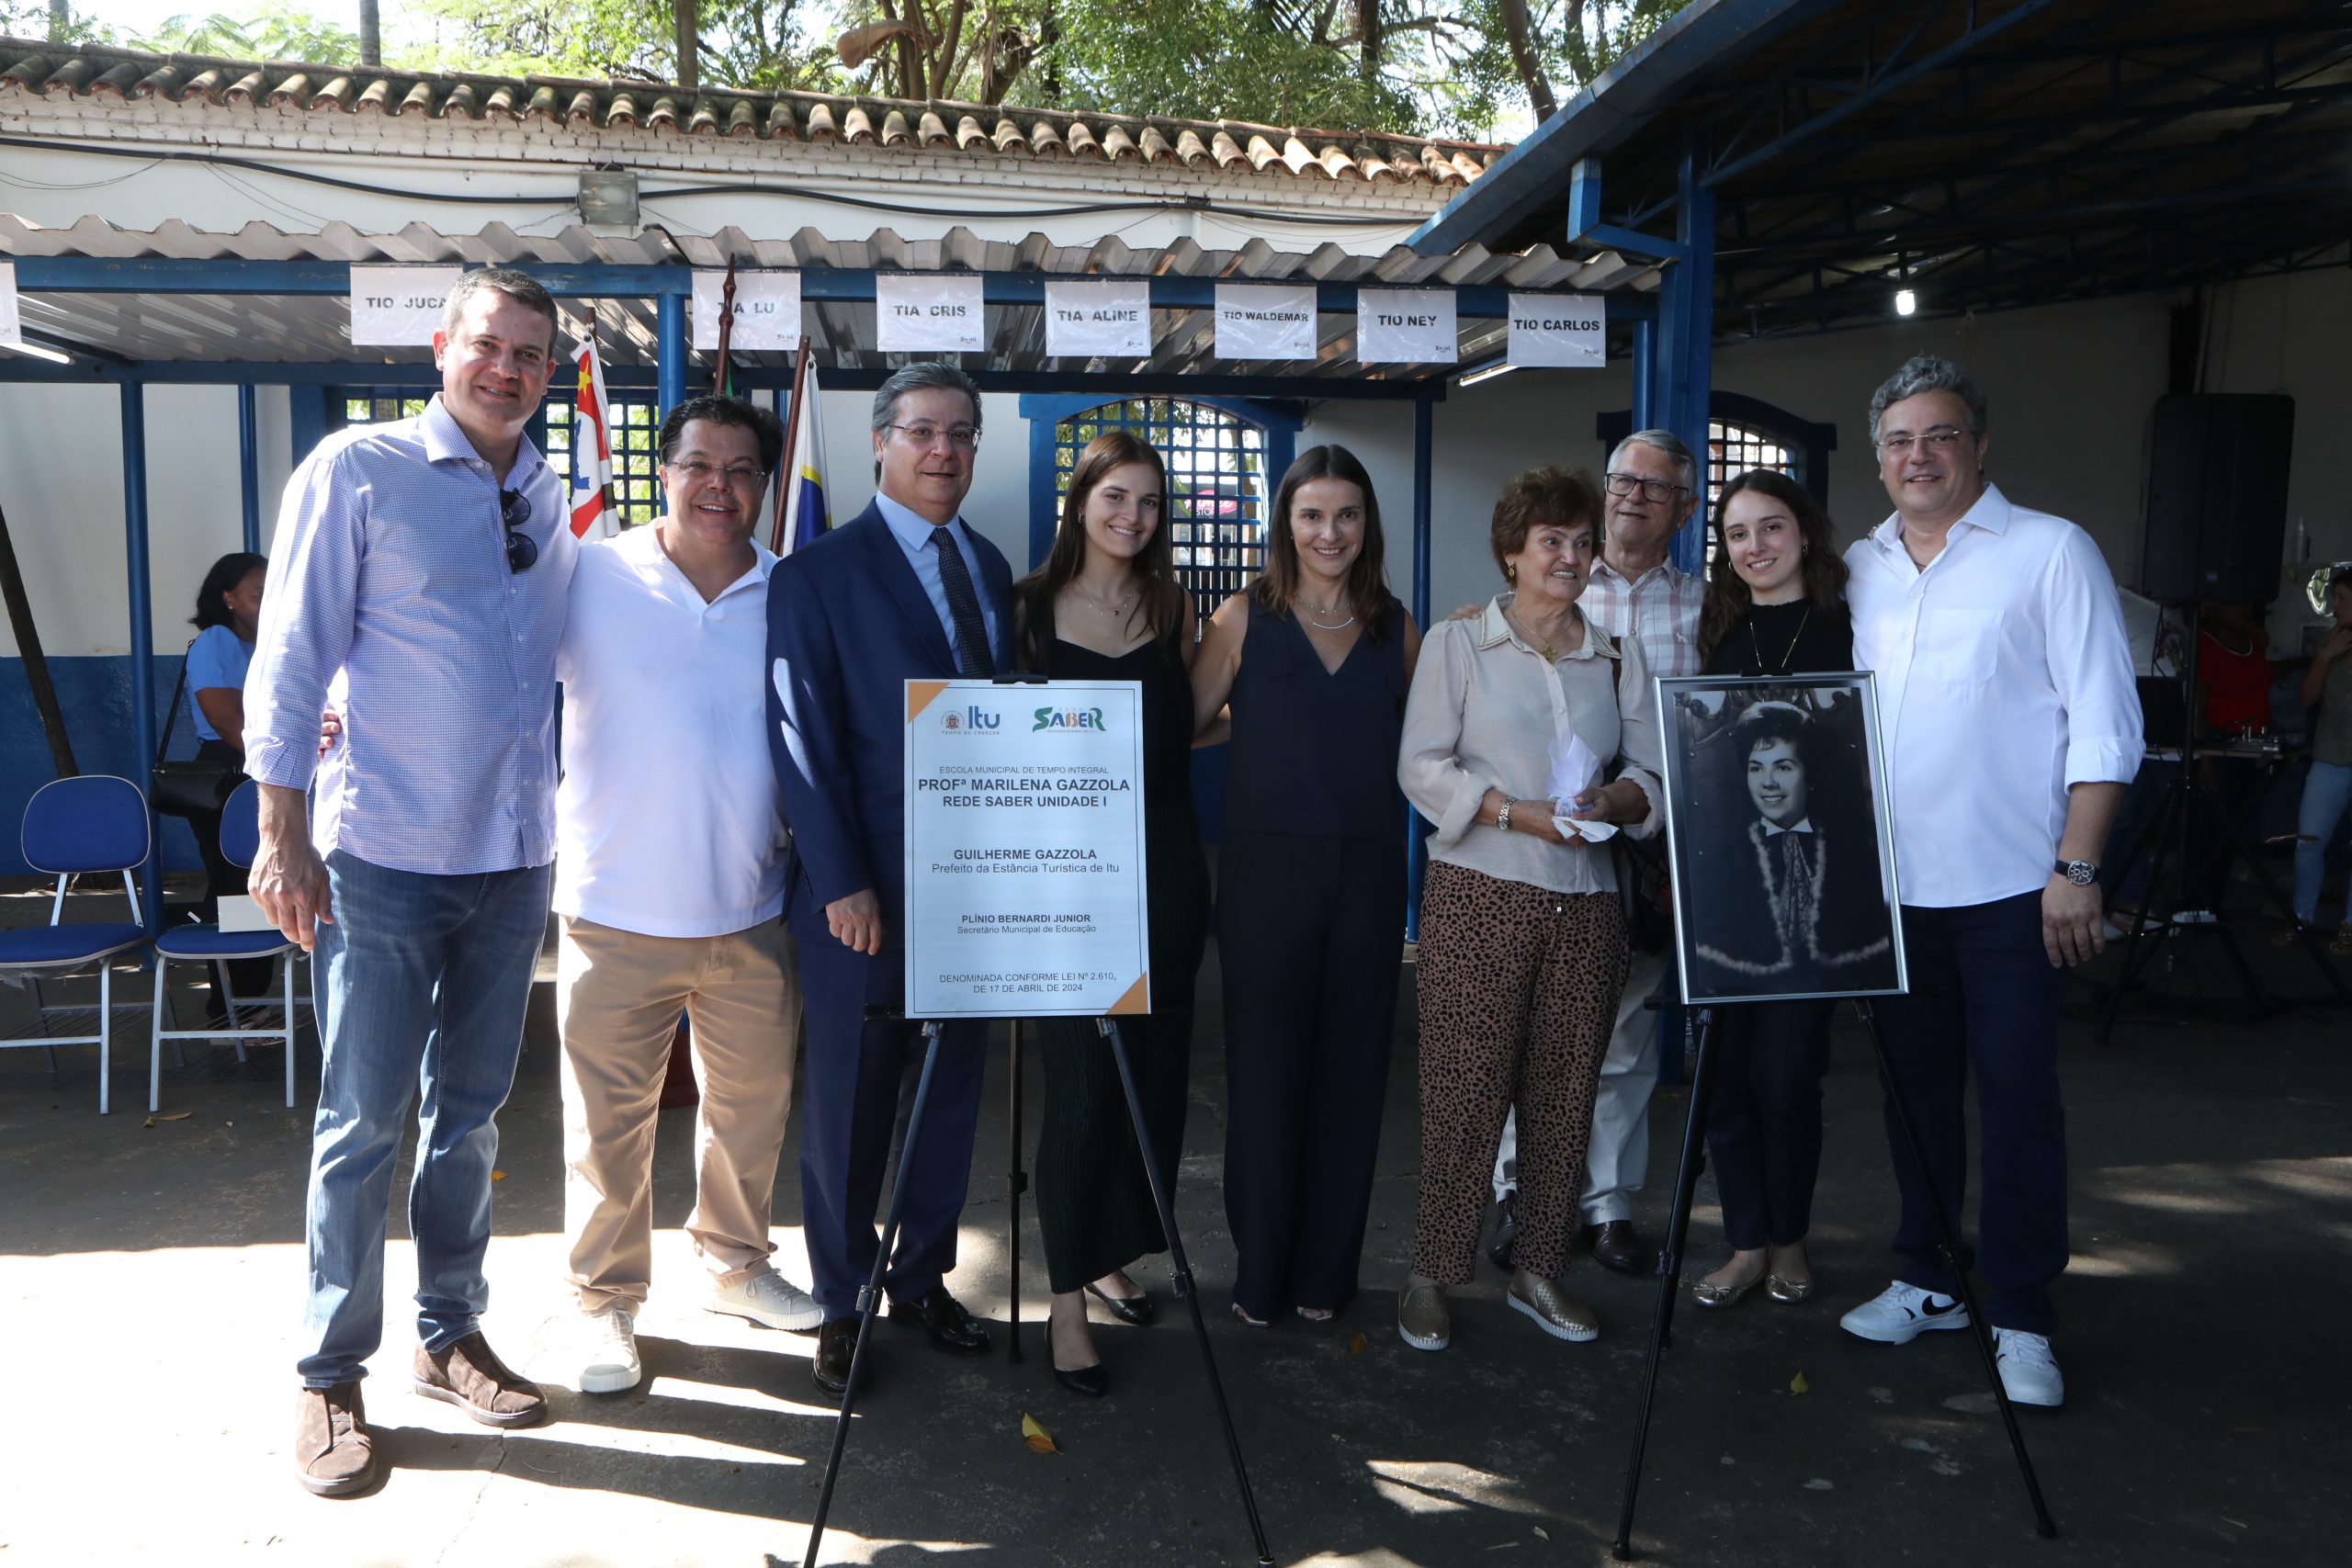 Imagem mostra o prefeito Guilherme Gazzola junto aos seus familiares.